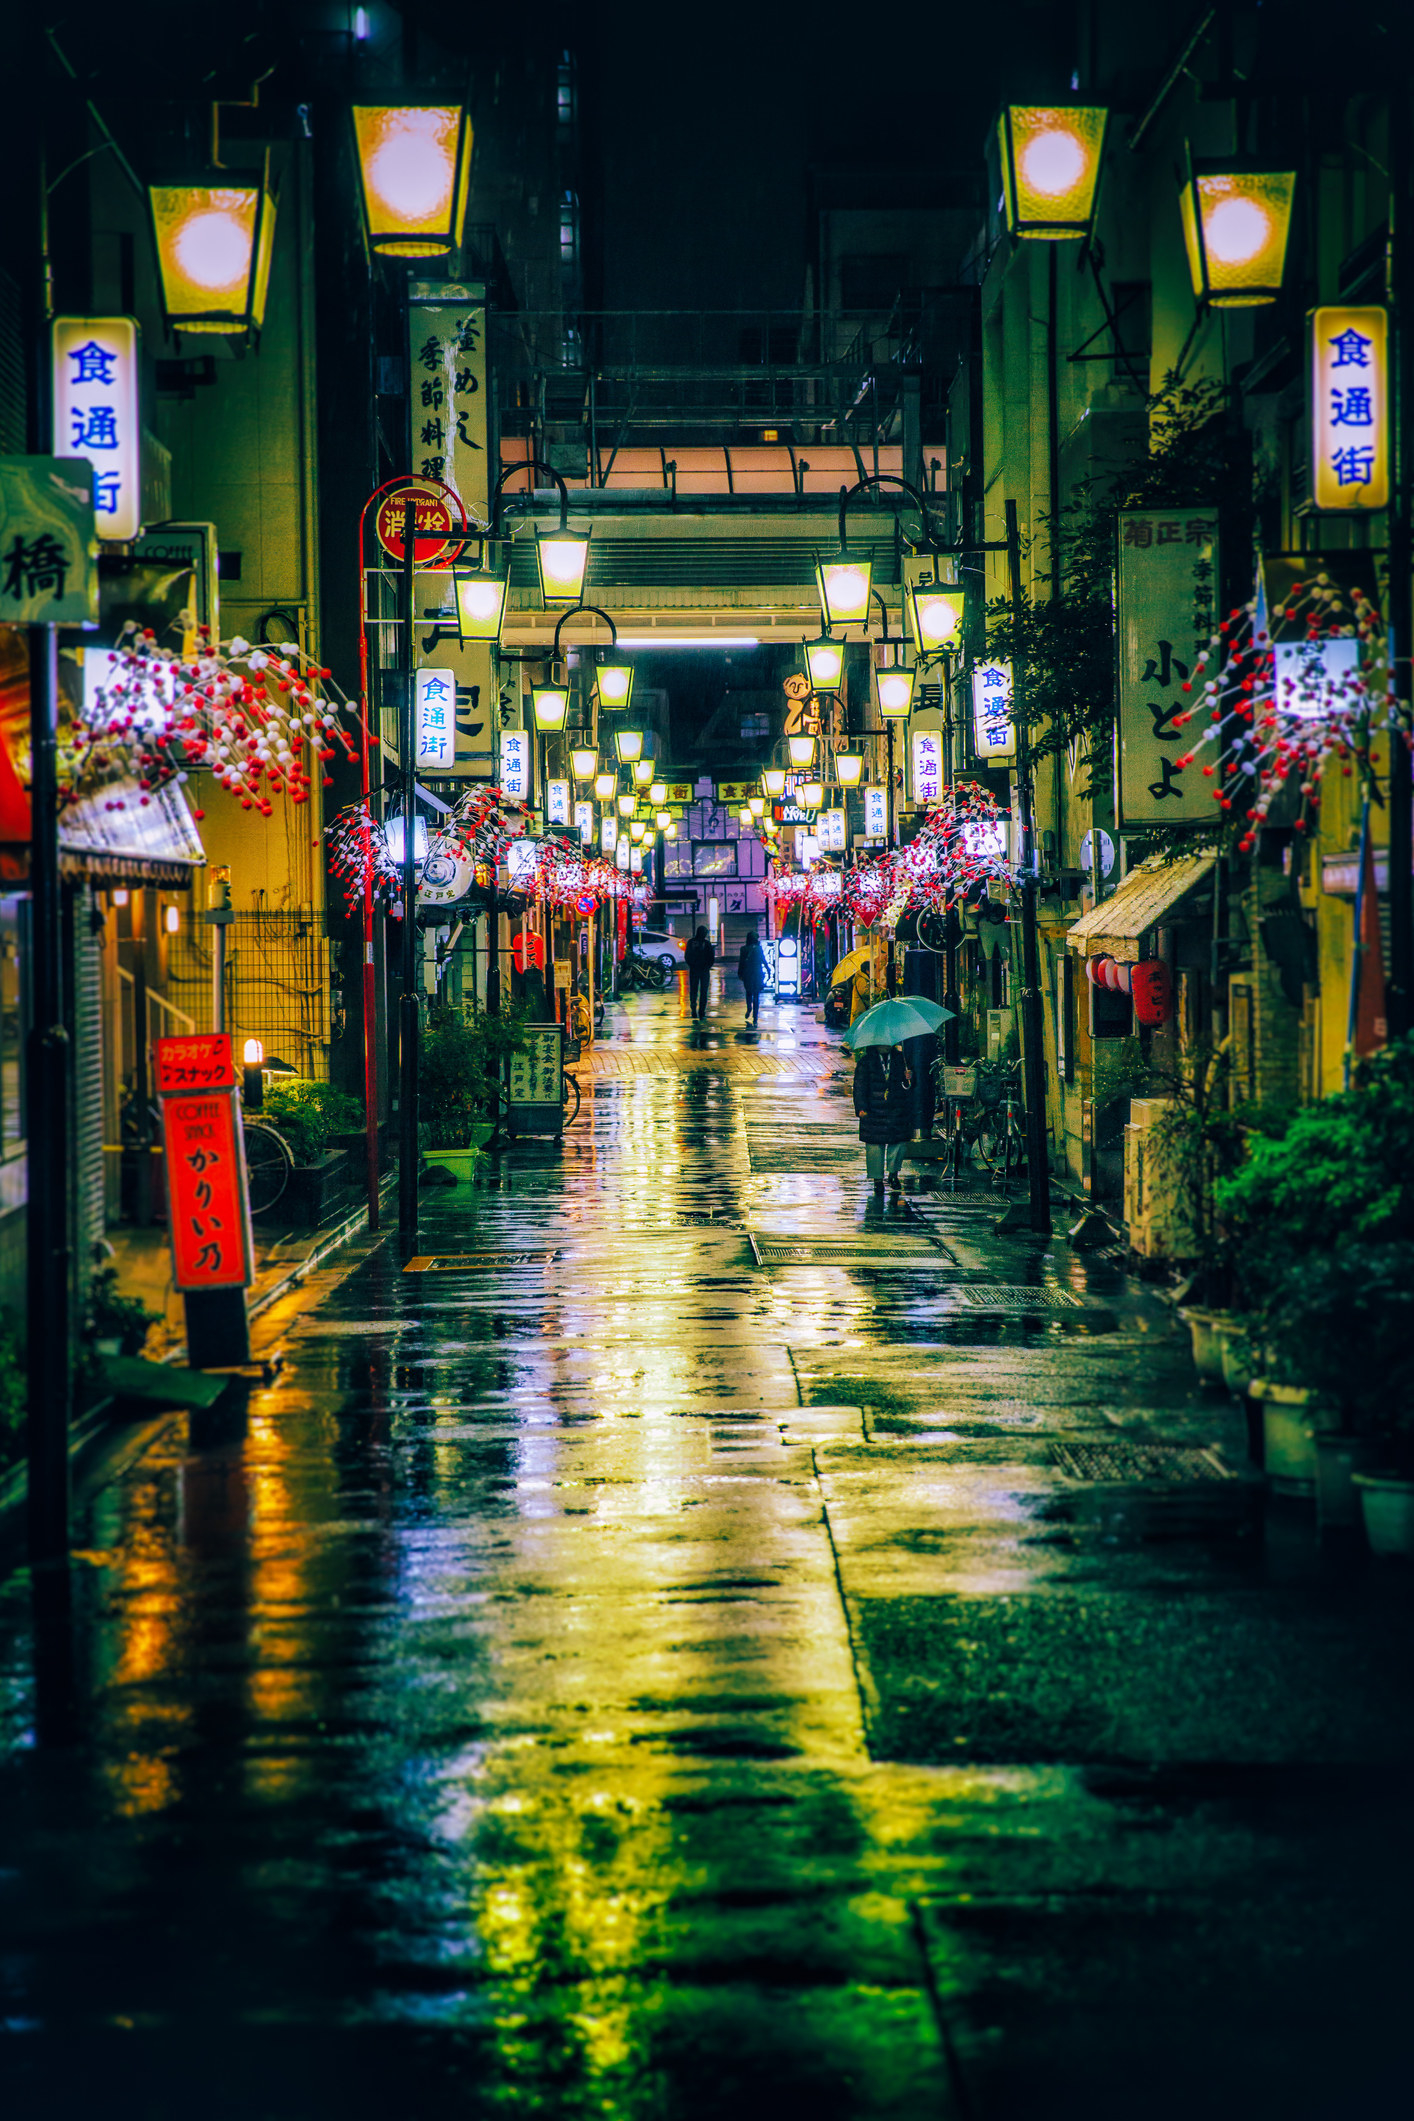 一个安静的晚上日本街。